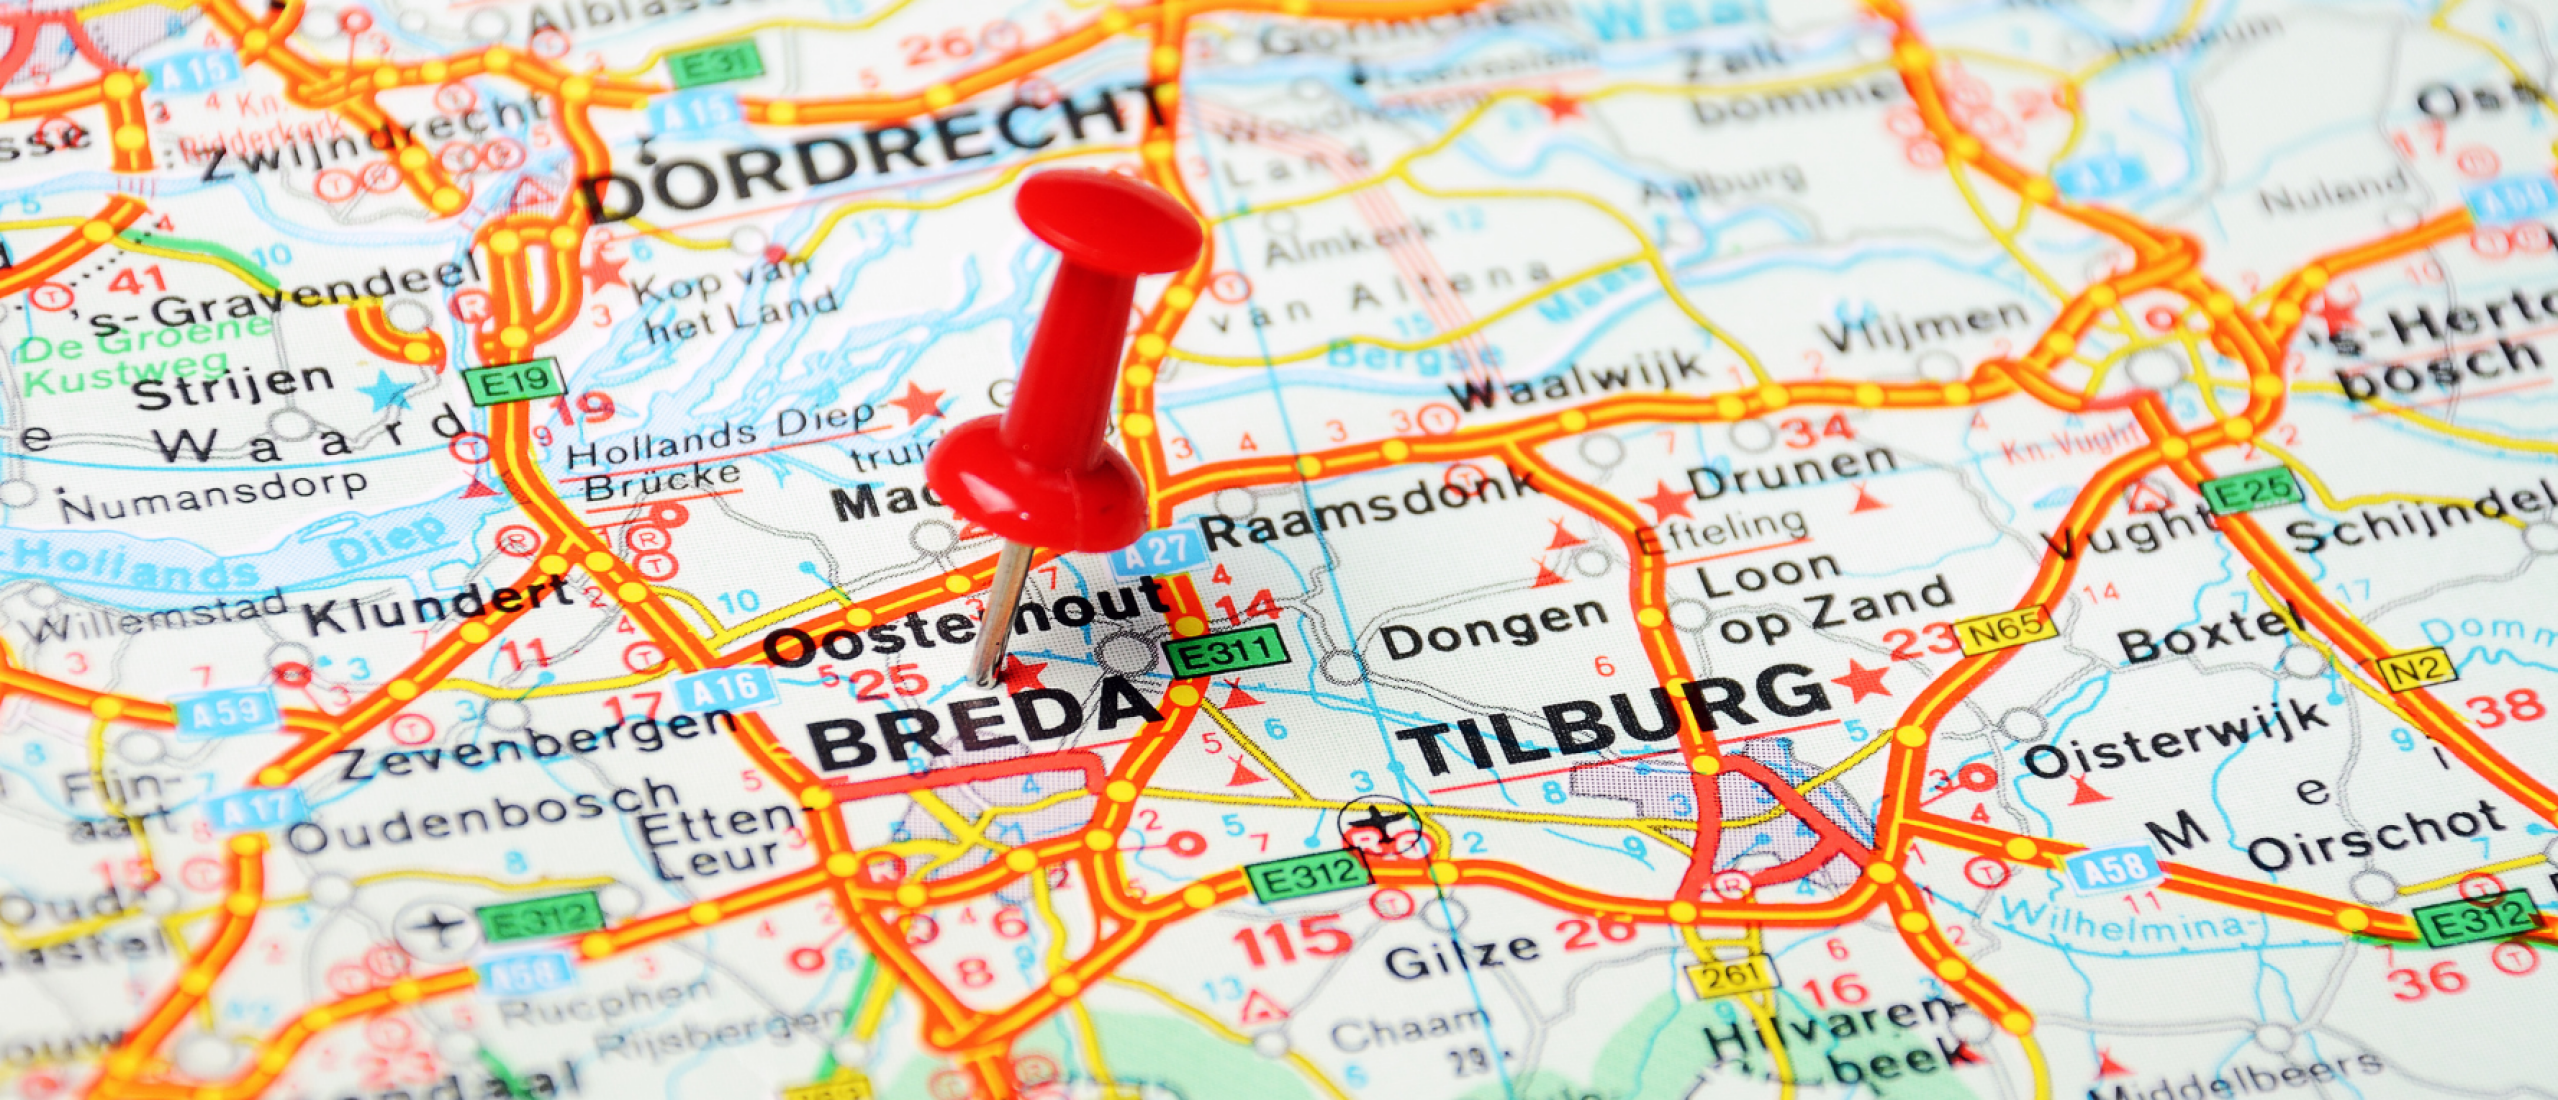 wegenkaart ter illustratie van regio's in Nederland